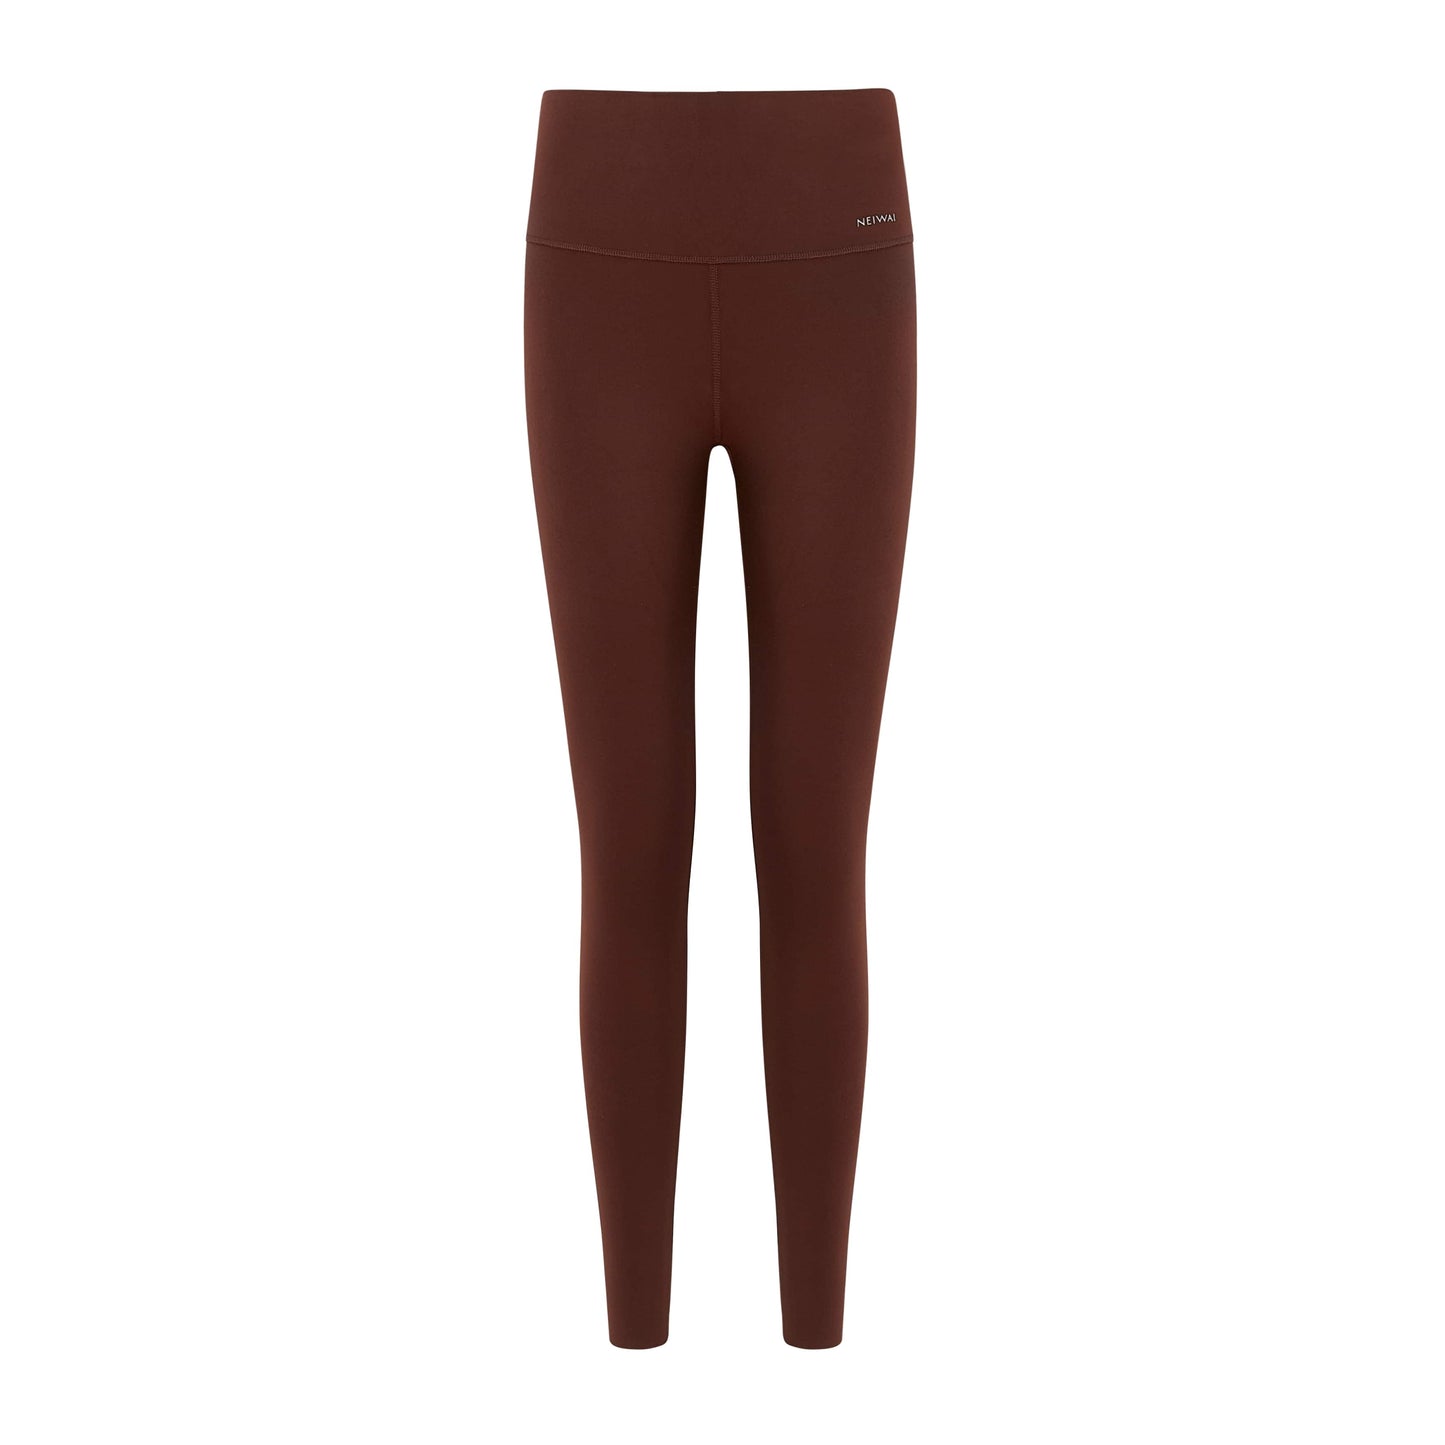 Flat lay image of brown leggings